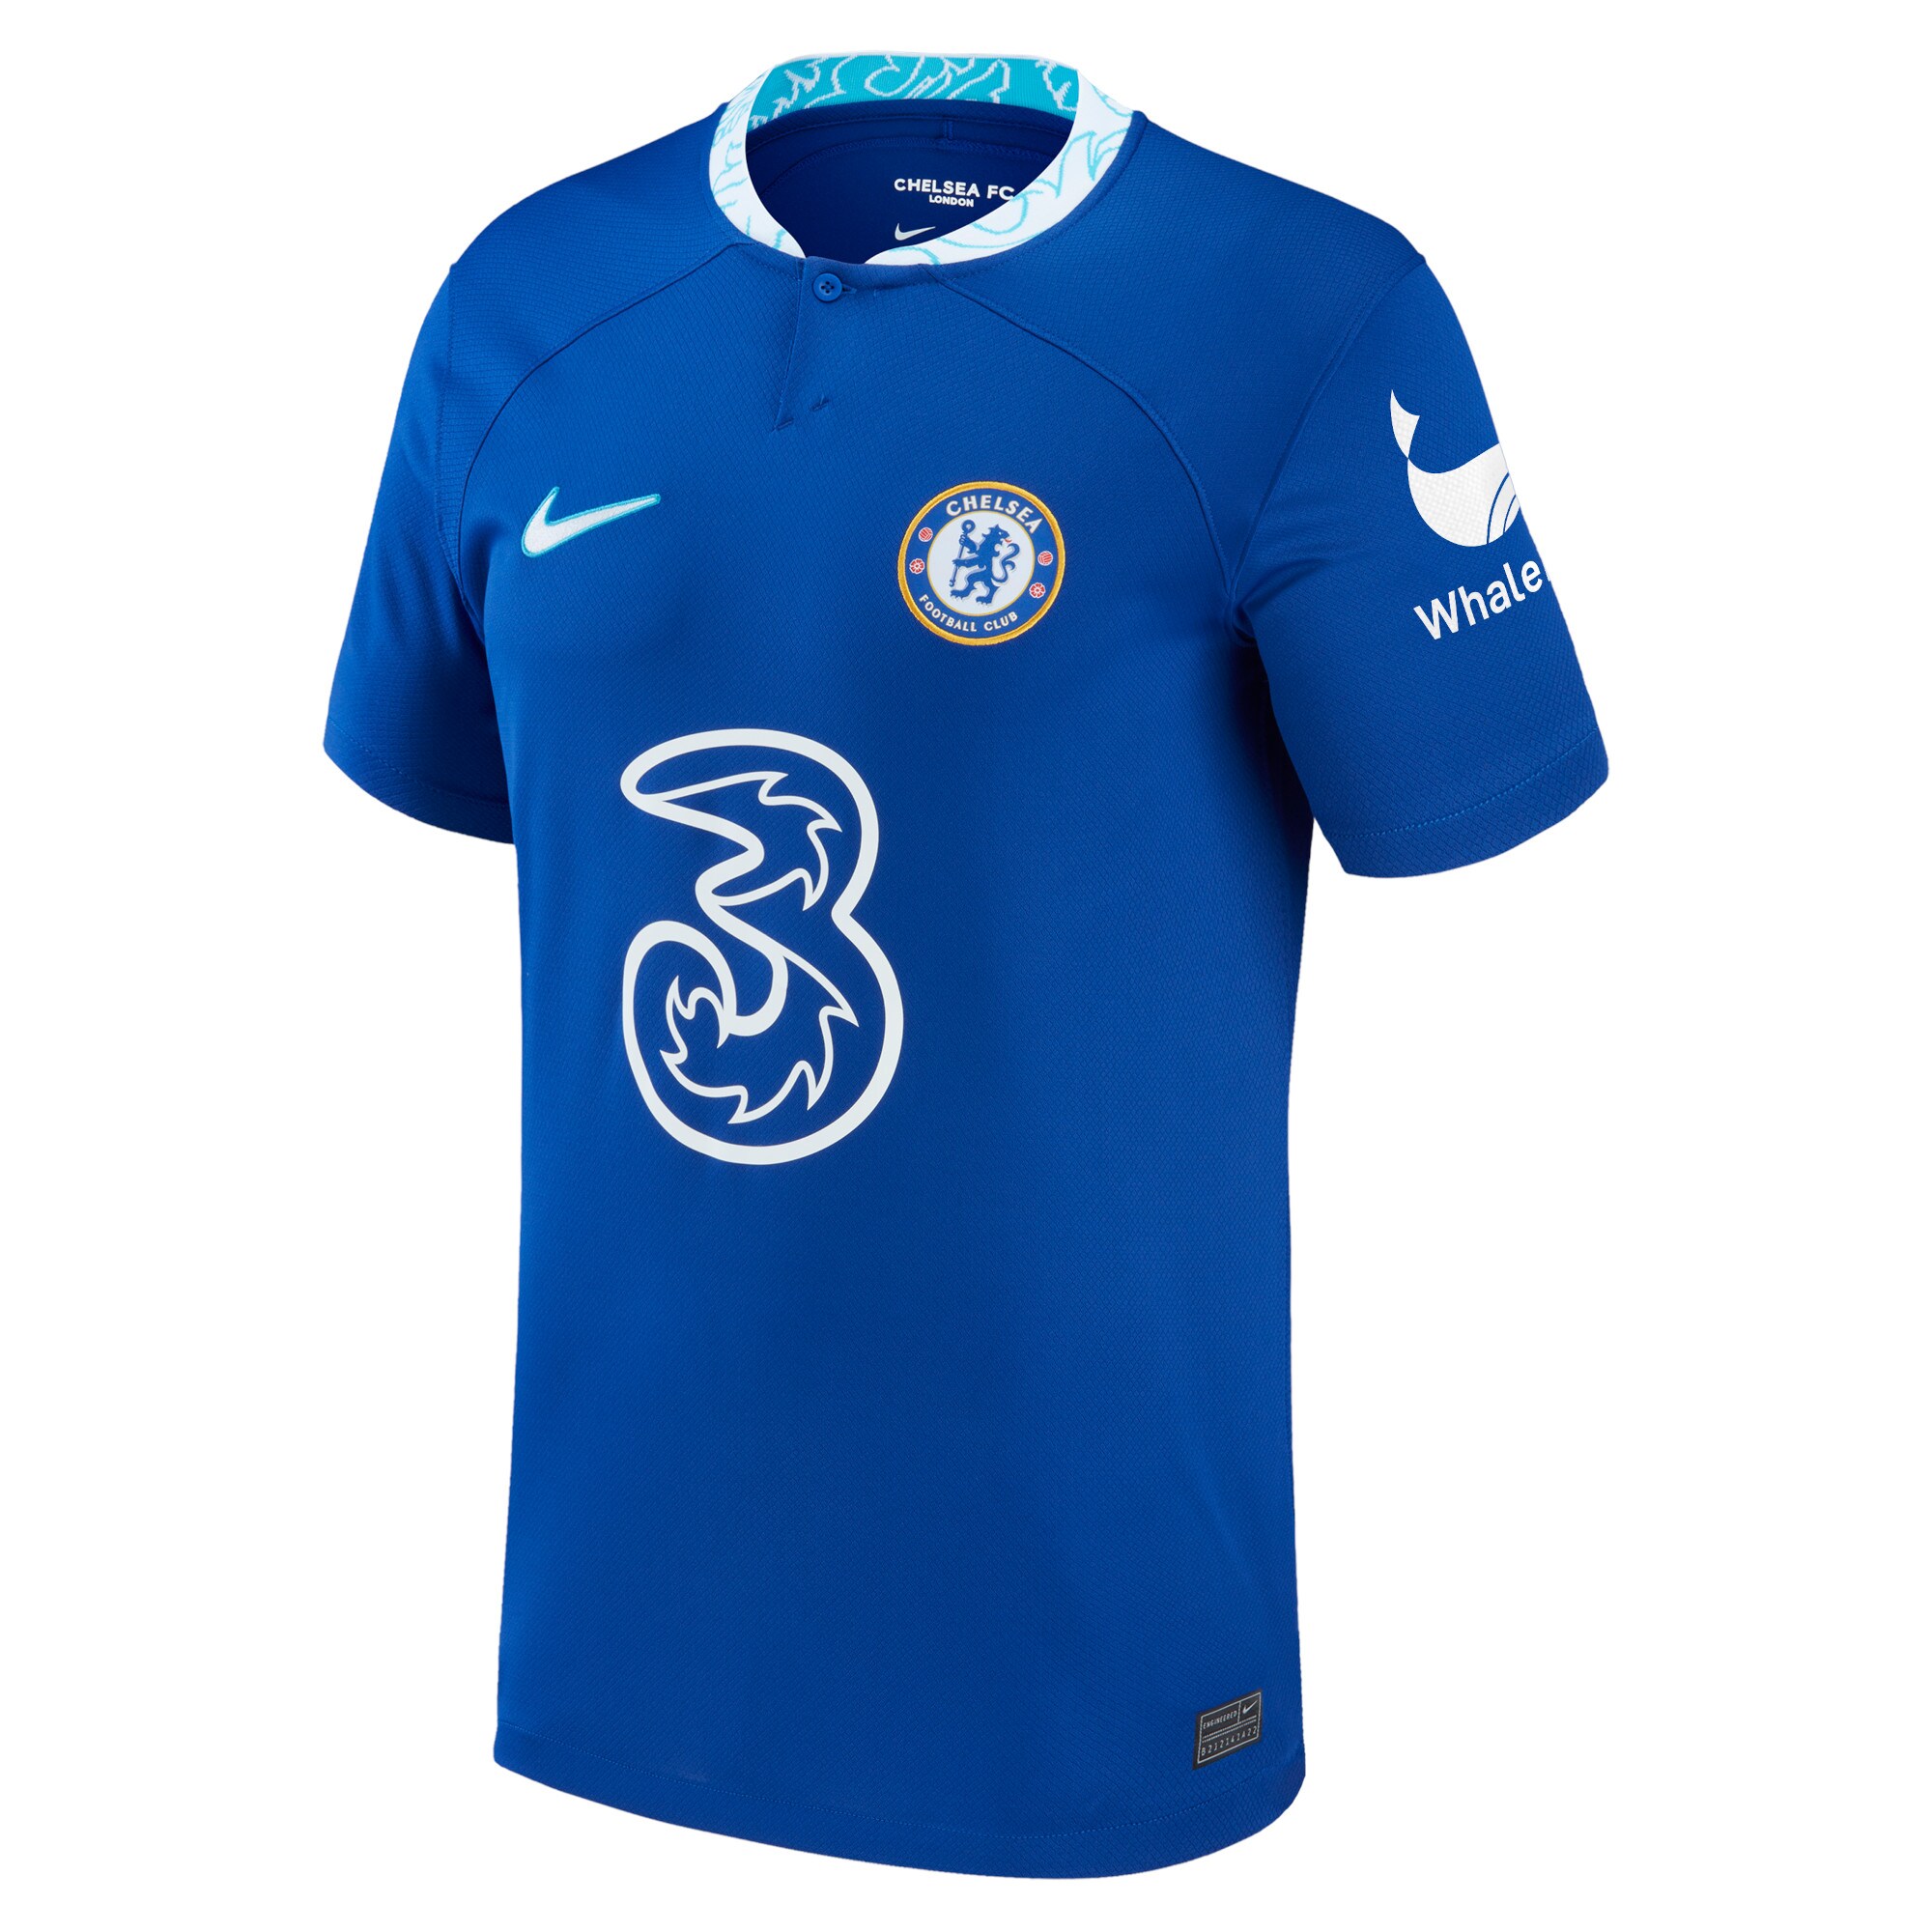 Chelsea Home Stadium Shirt 2022-23 with Broja 18 printing